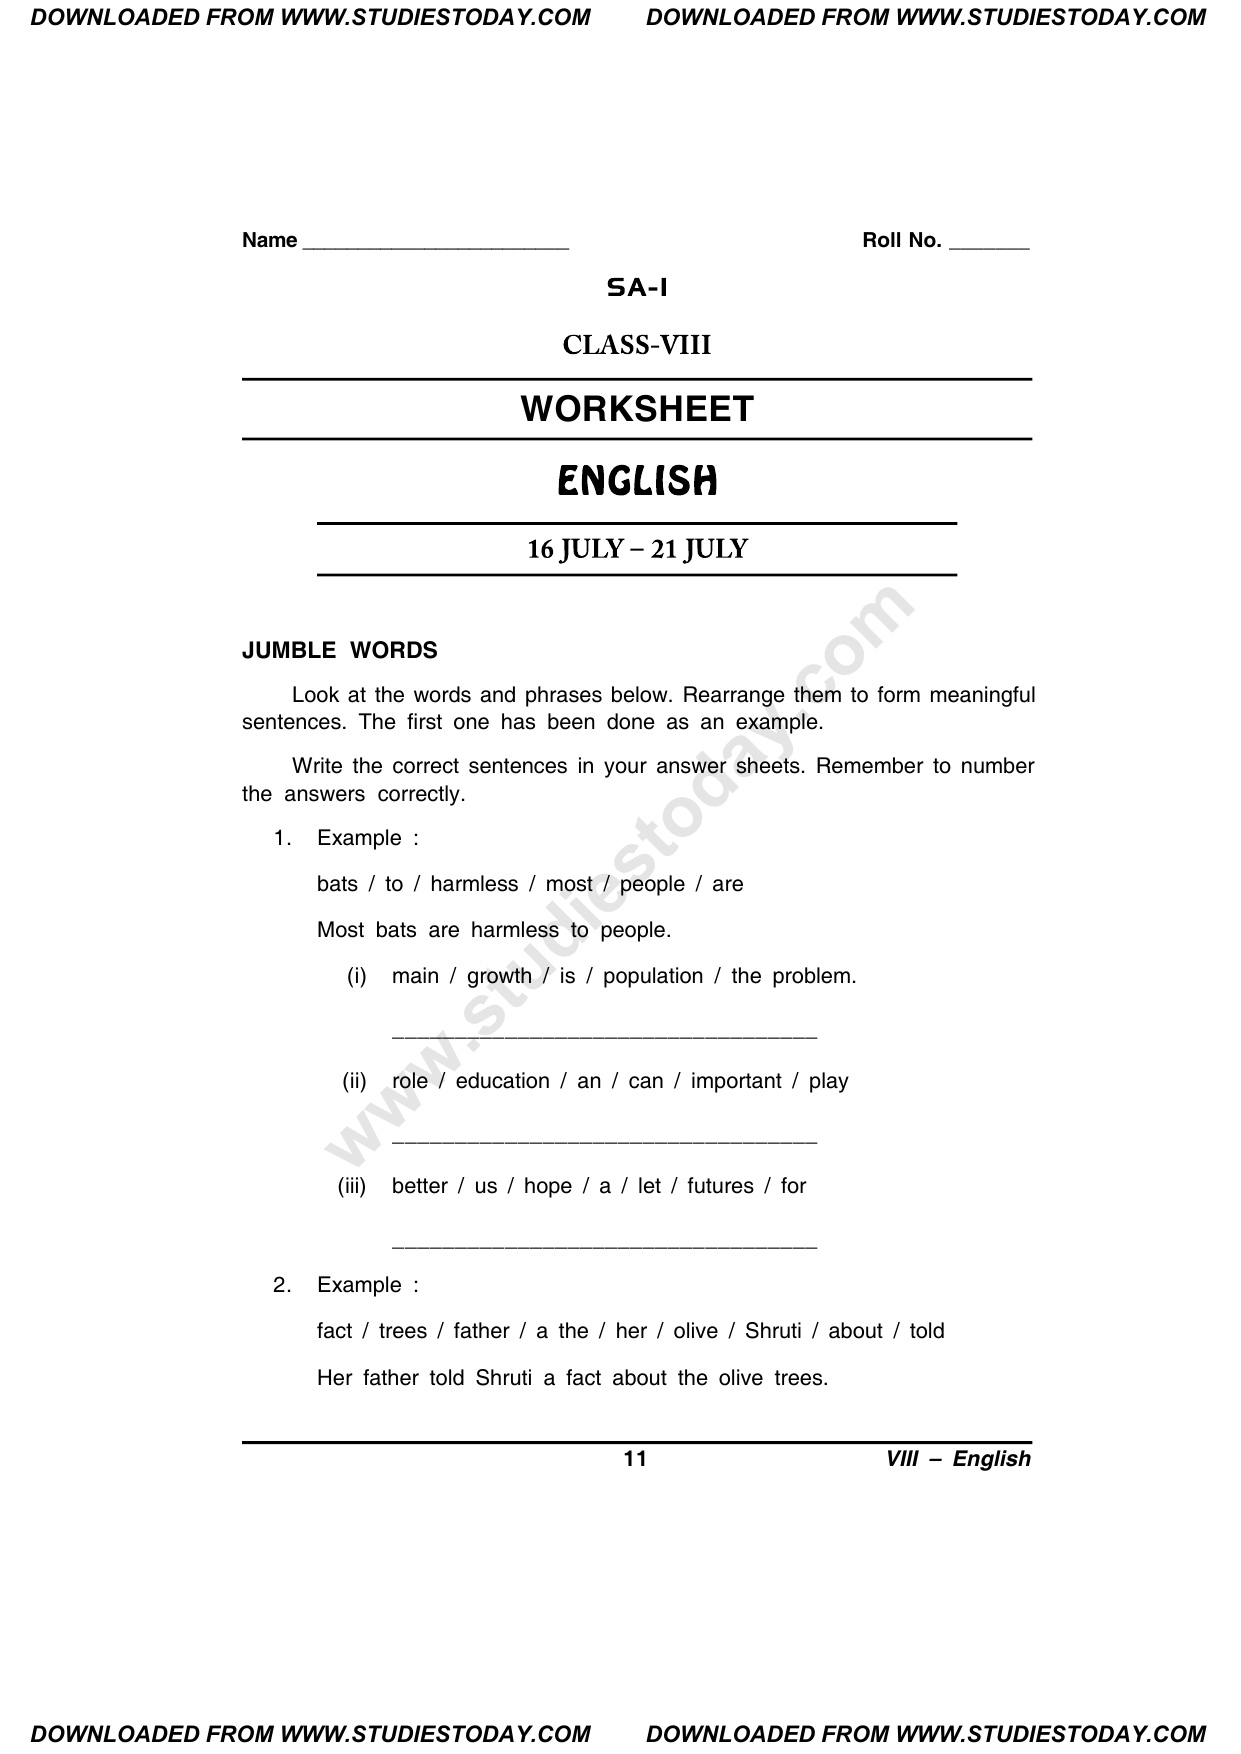 CBSE Class 8 English Worksheet 9